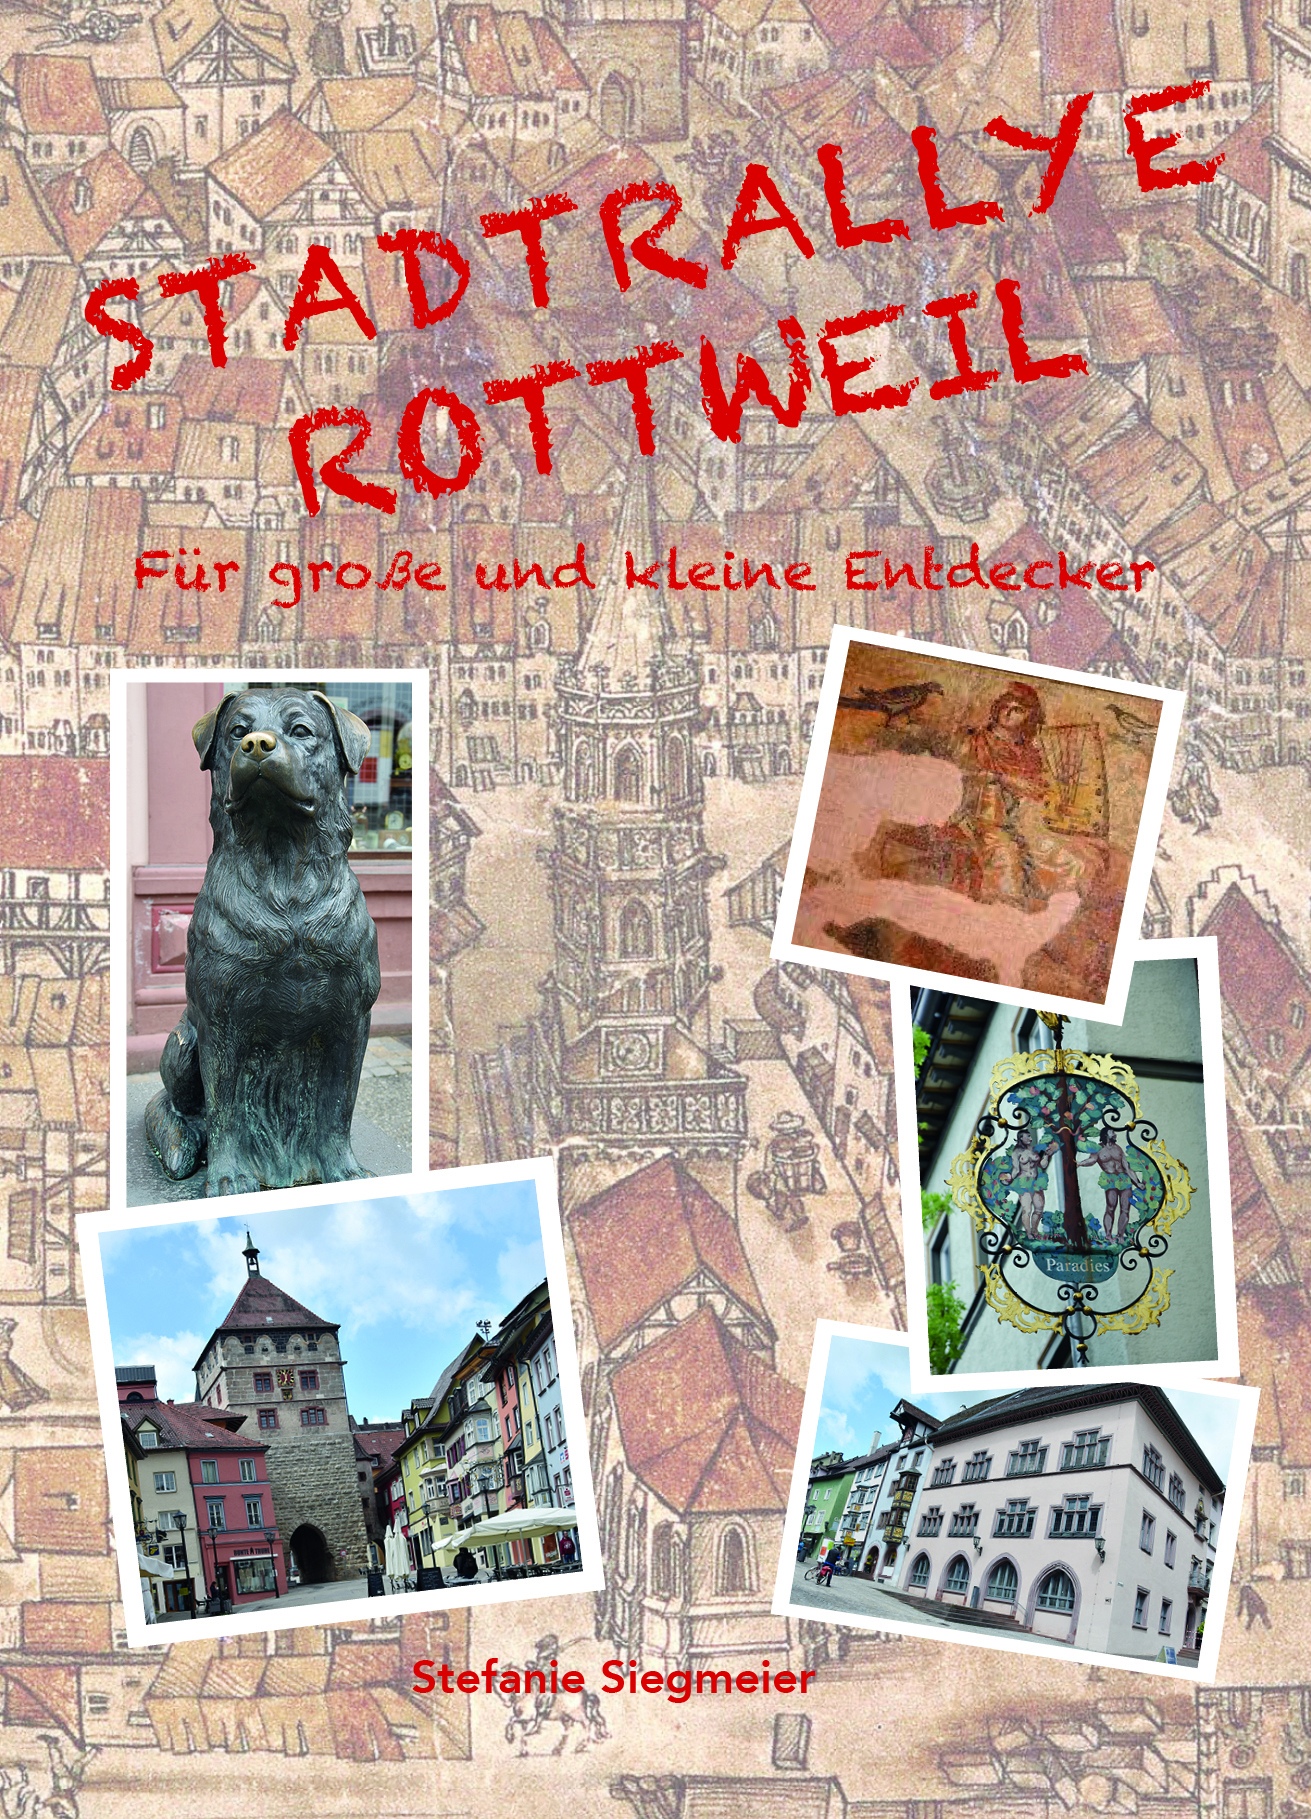 Stadtrallye Rottweil